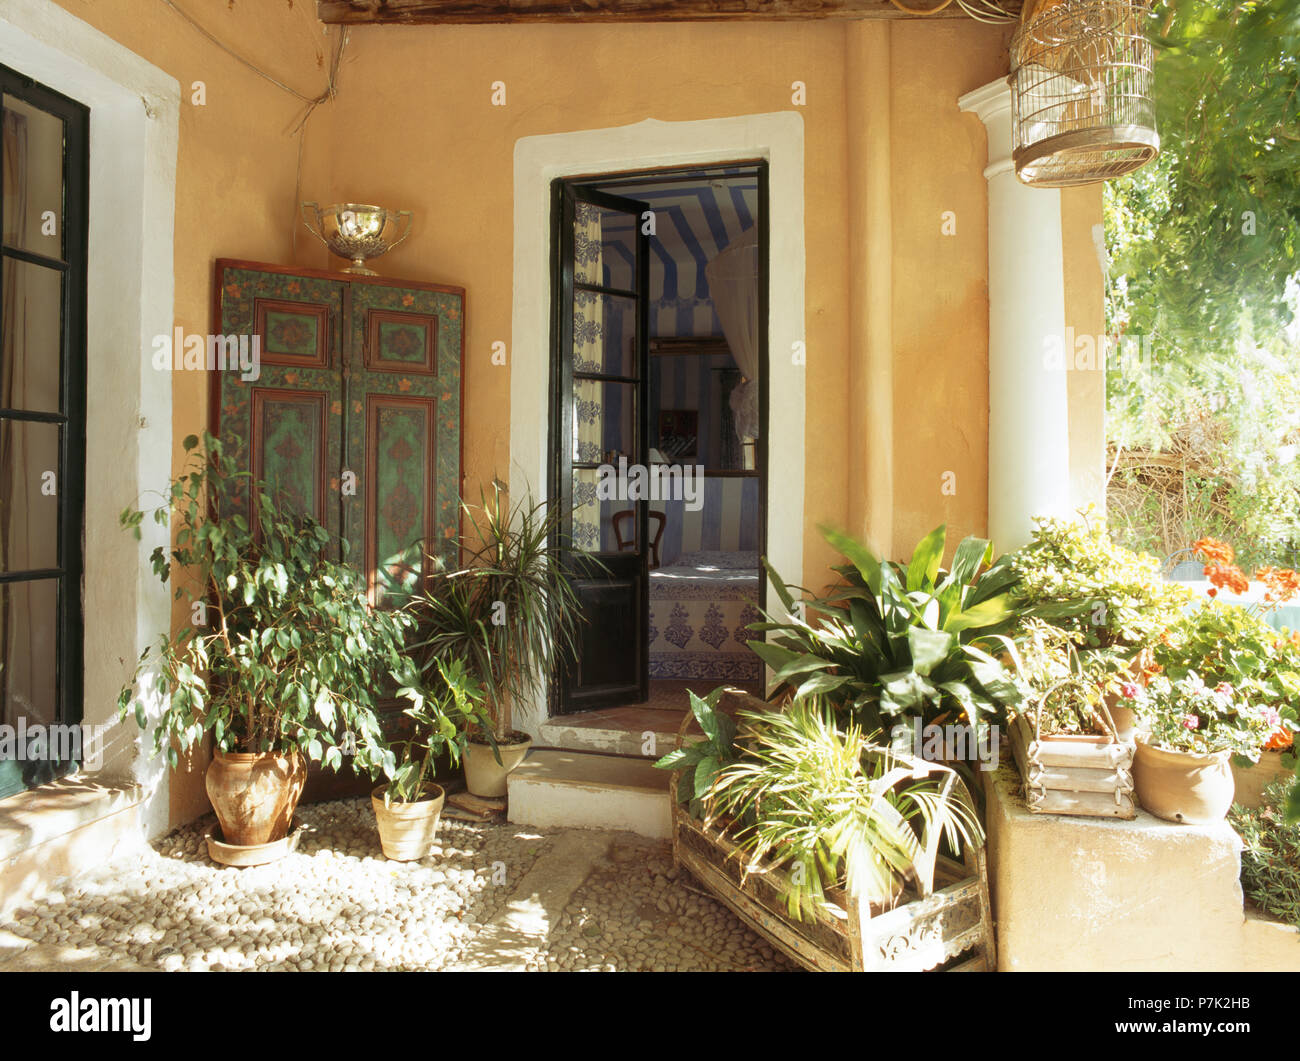 Les plantes vertes en pots et boîtes en bois dans la région de porche de maison de style méditerranéen, avec des portes en verre Banque D'Images